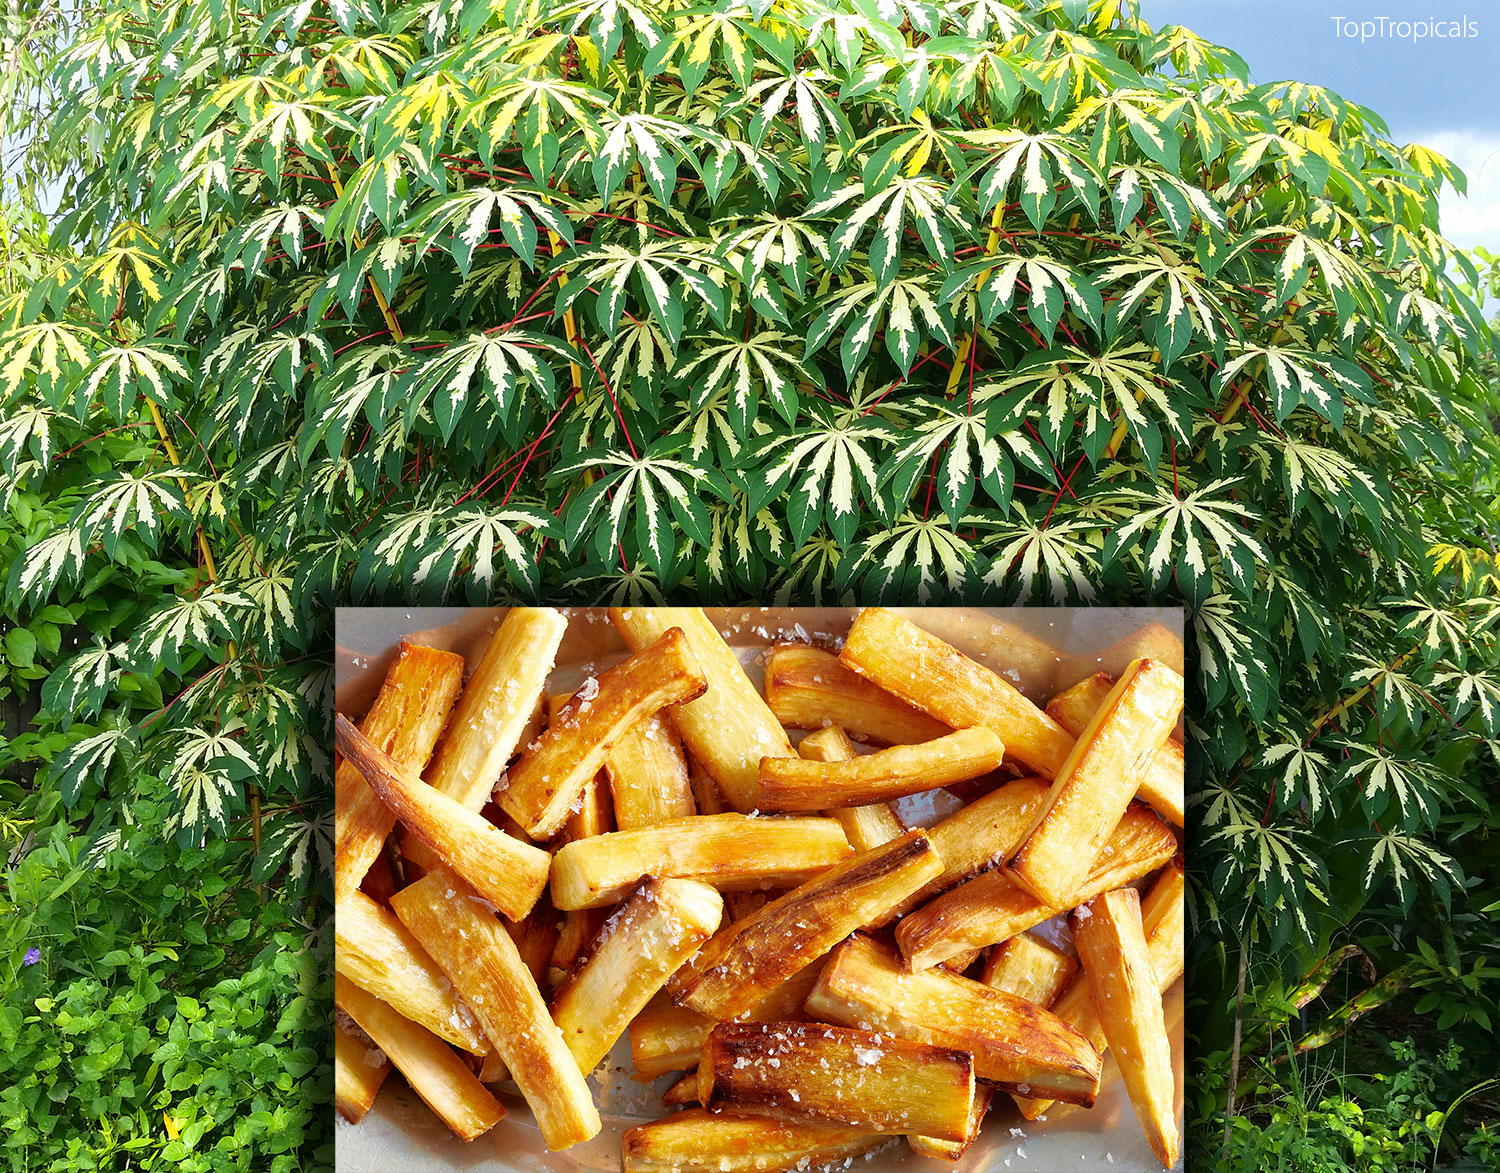 Yuca root fries recipe